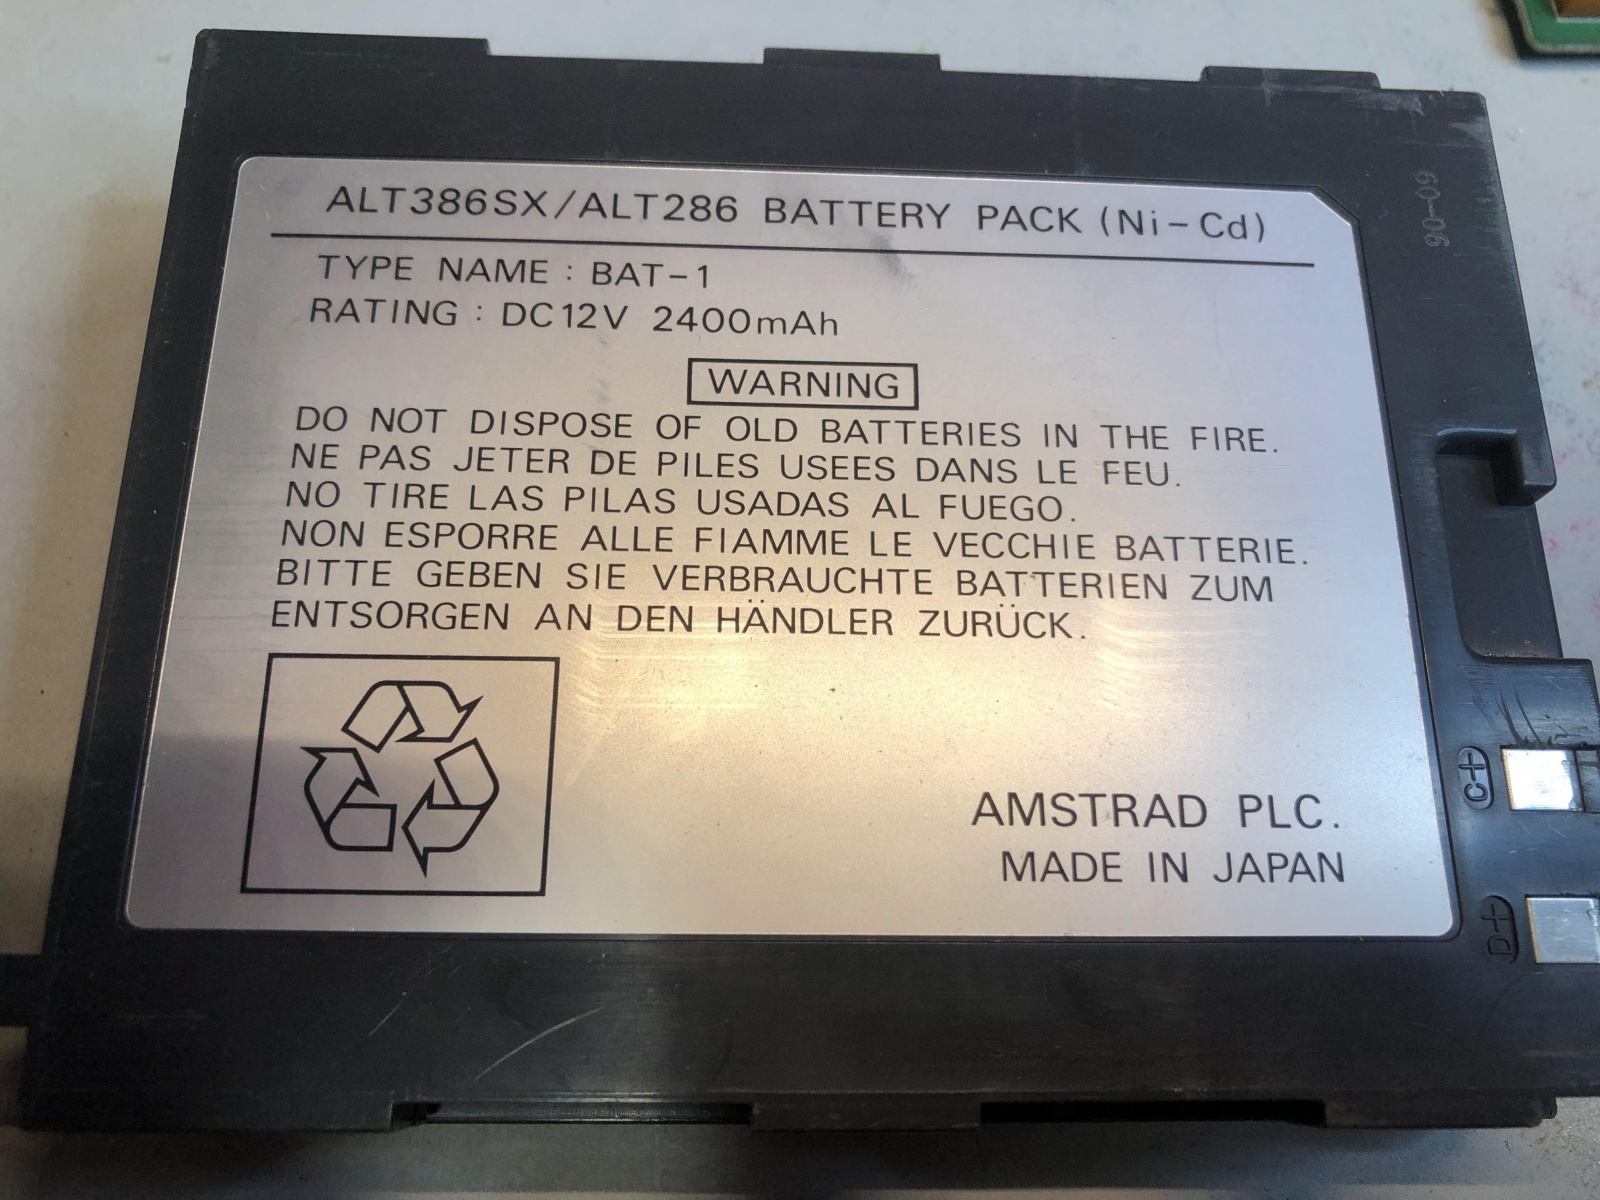 7 килограммов портативности, или ноутбук Amstrad ALT-386SX из 1988 года. Часть 2 — разбираем убердевайс - 3